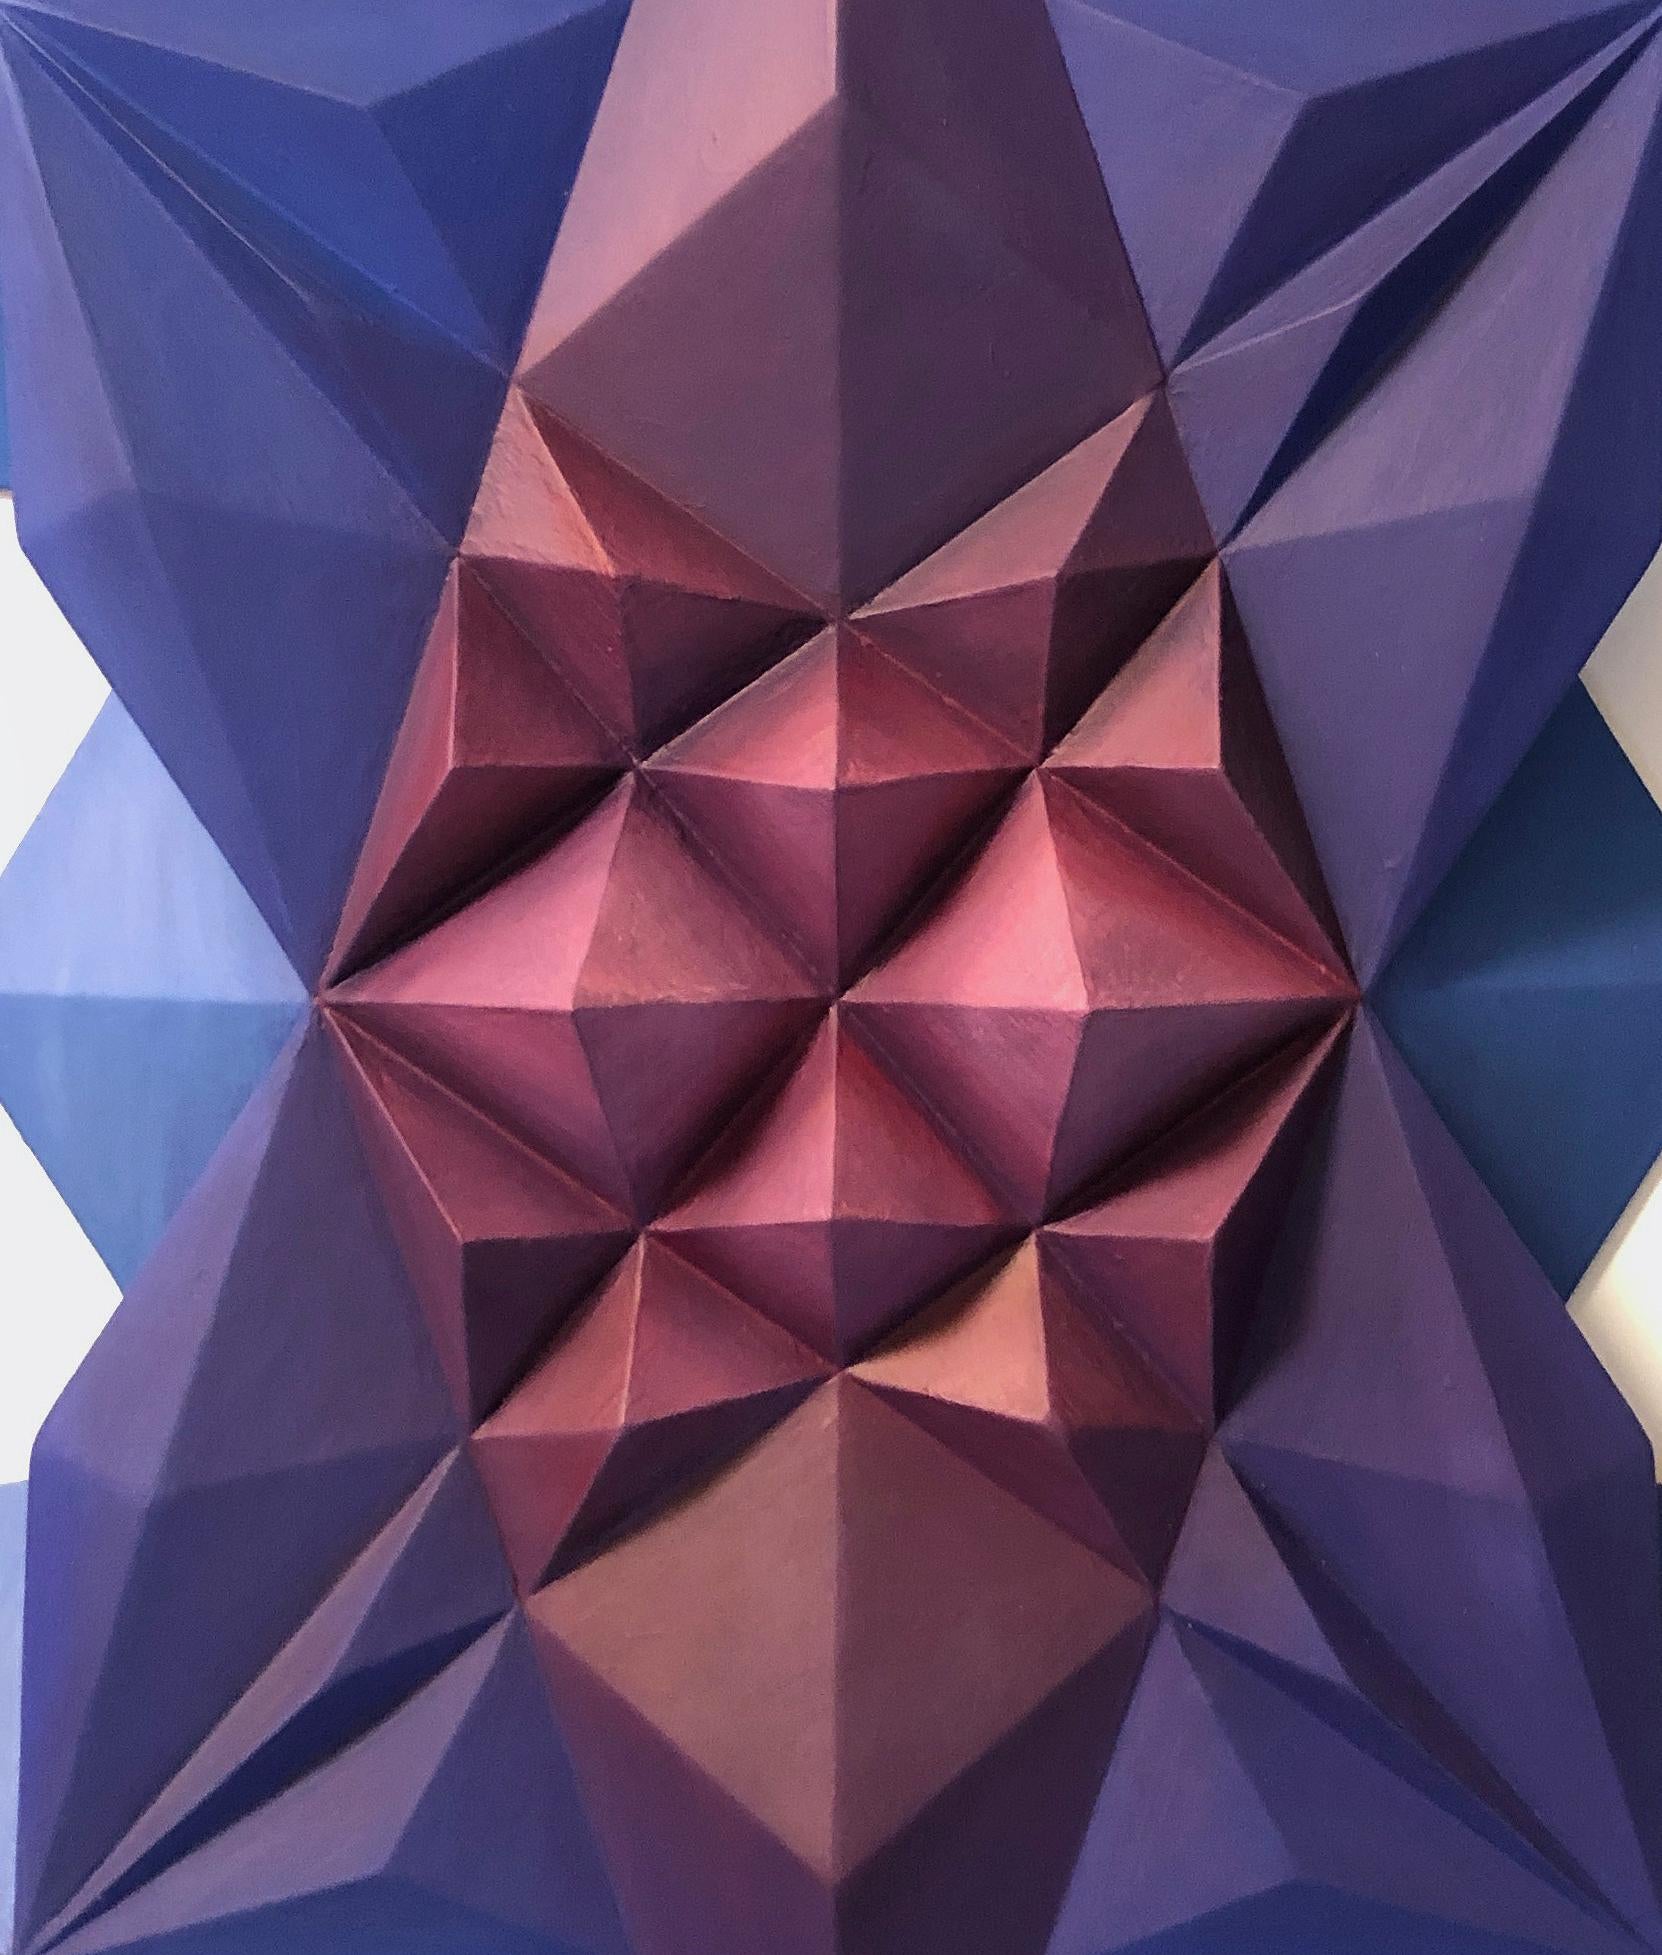 Chelonian : Zeitgenössisches 3D-Kunstwerk  (Geometrische Abstraktion), Mixed Media Art, von David Rockwell